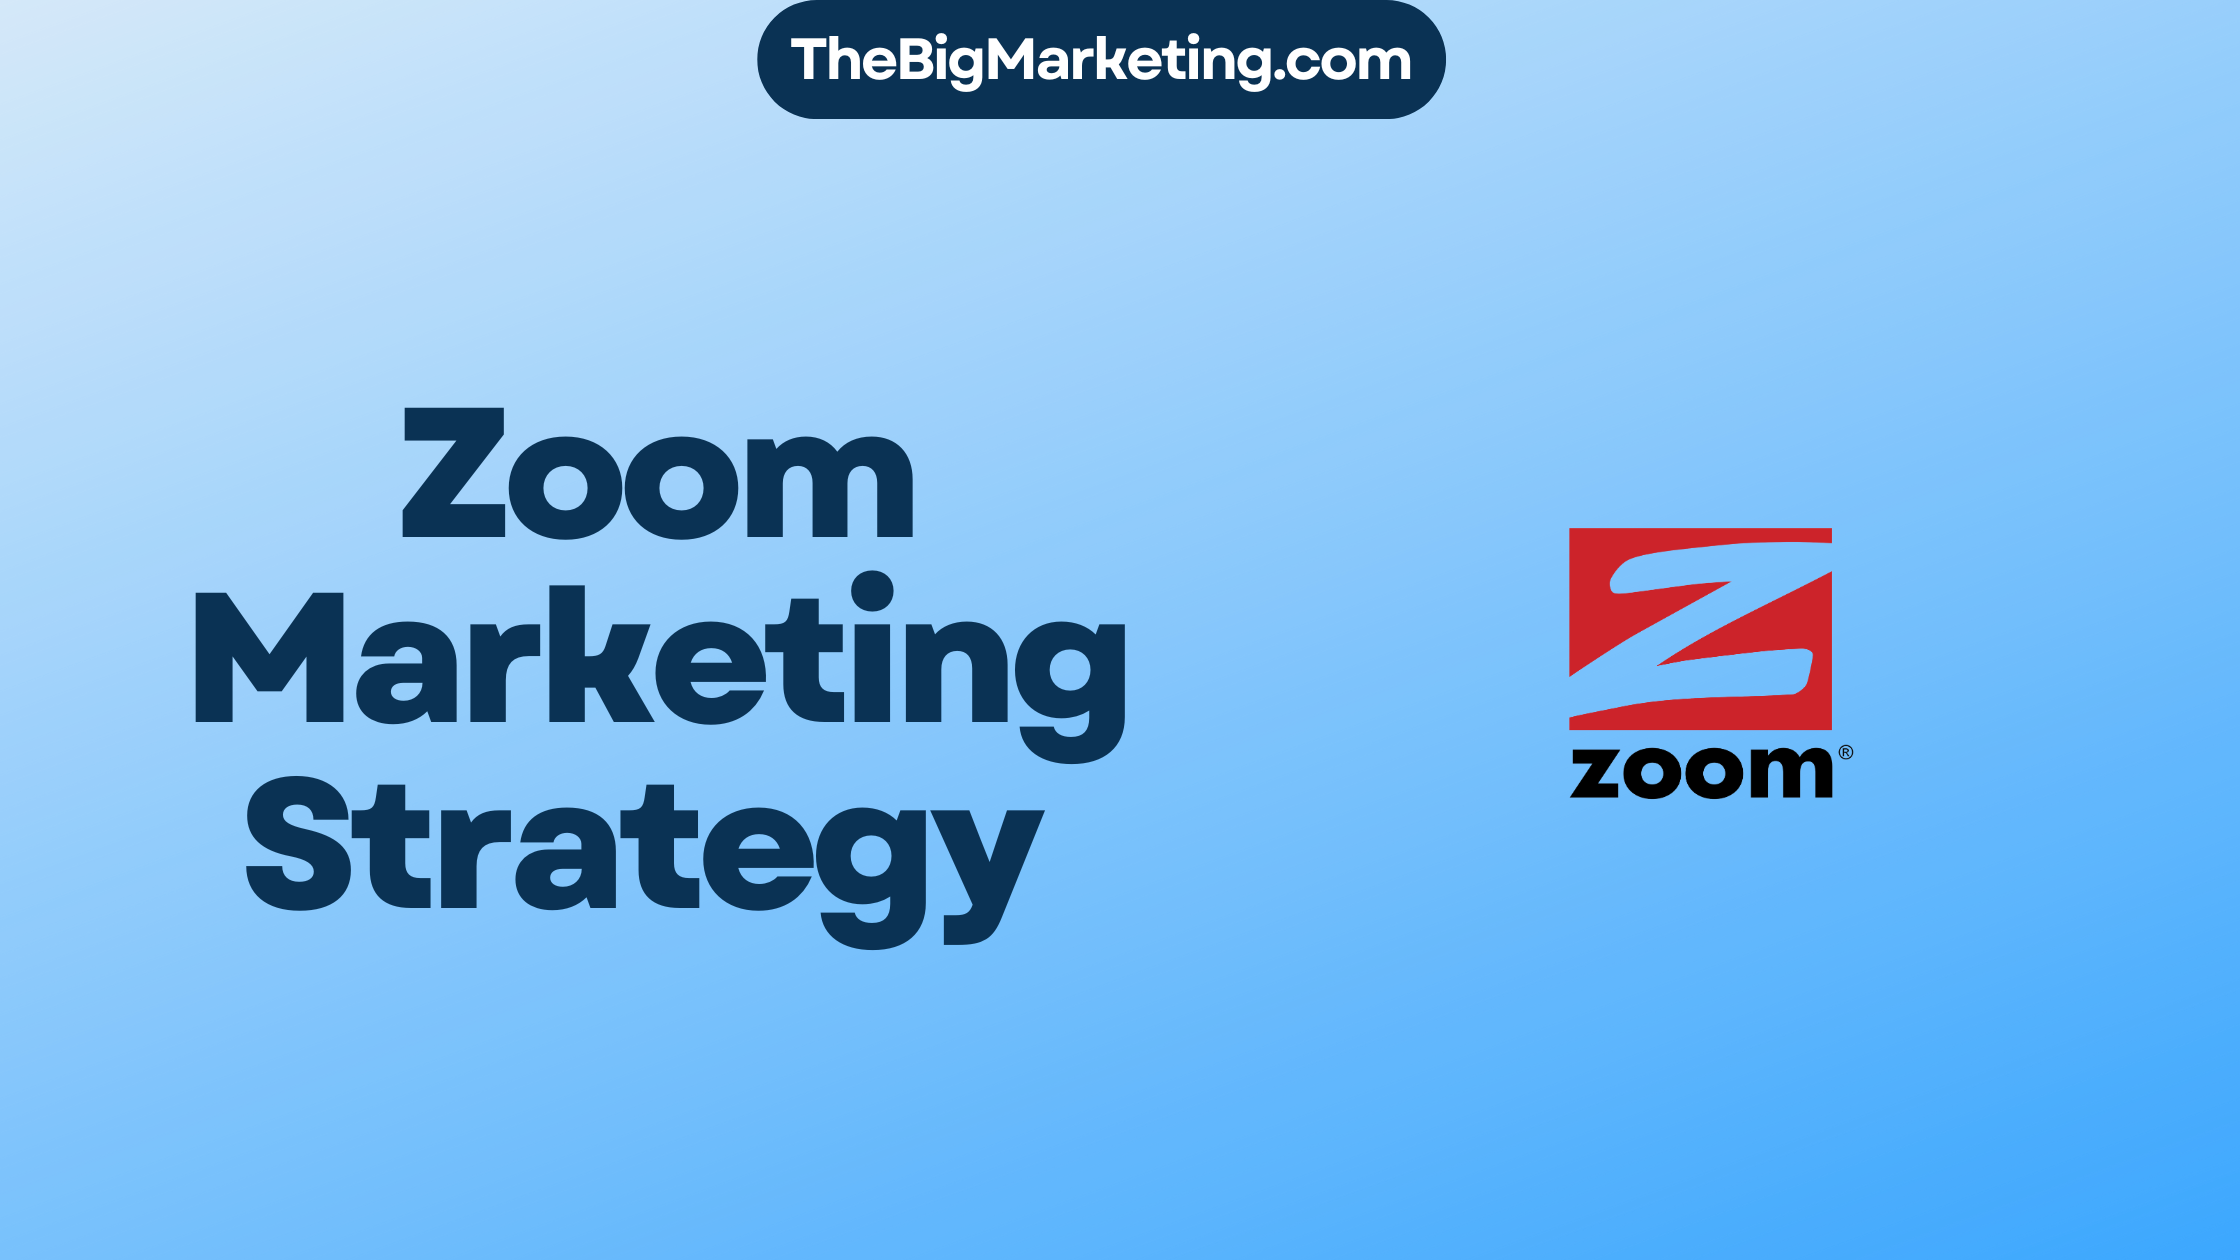 Zoom Marketing Strategy